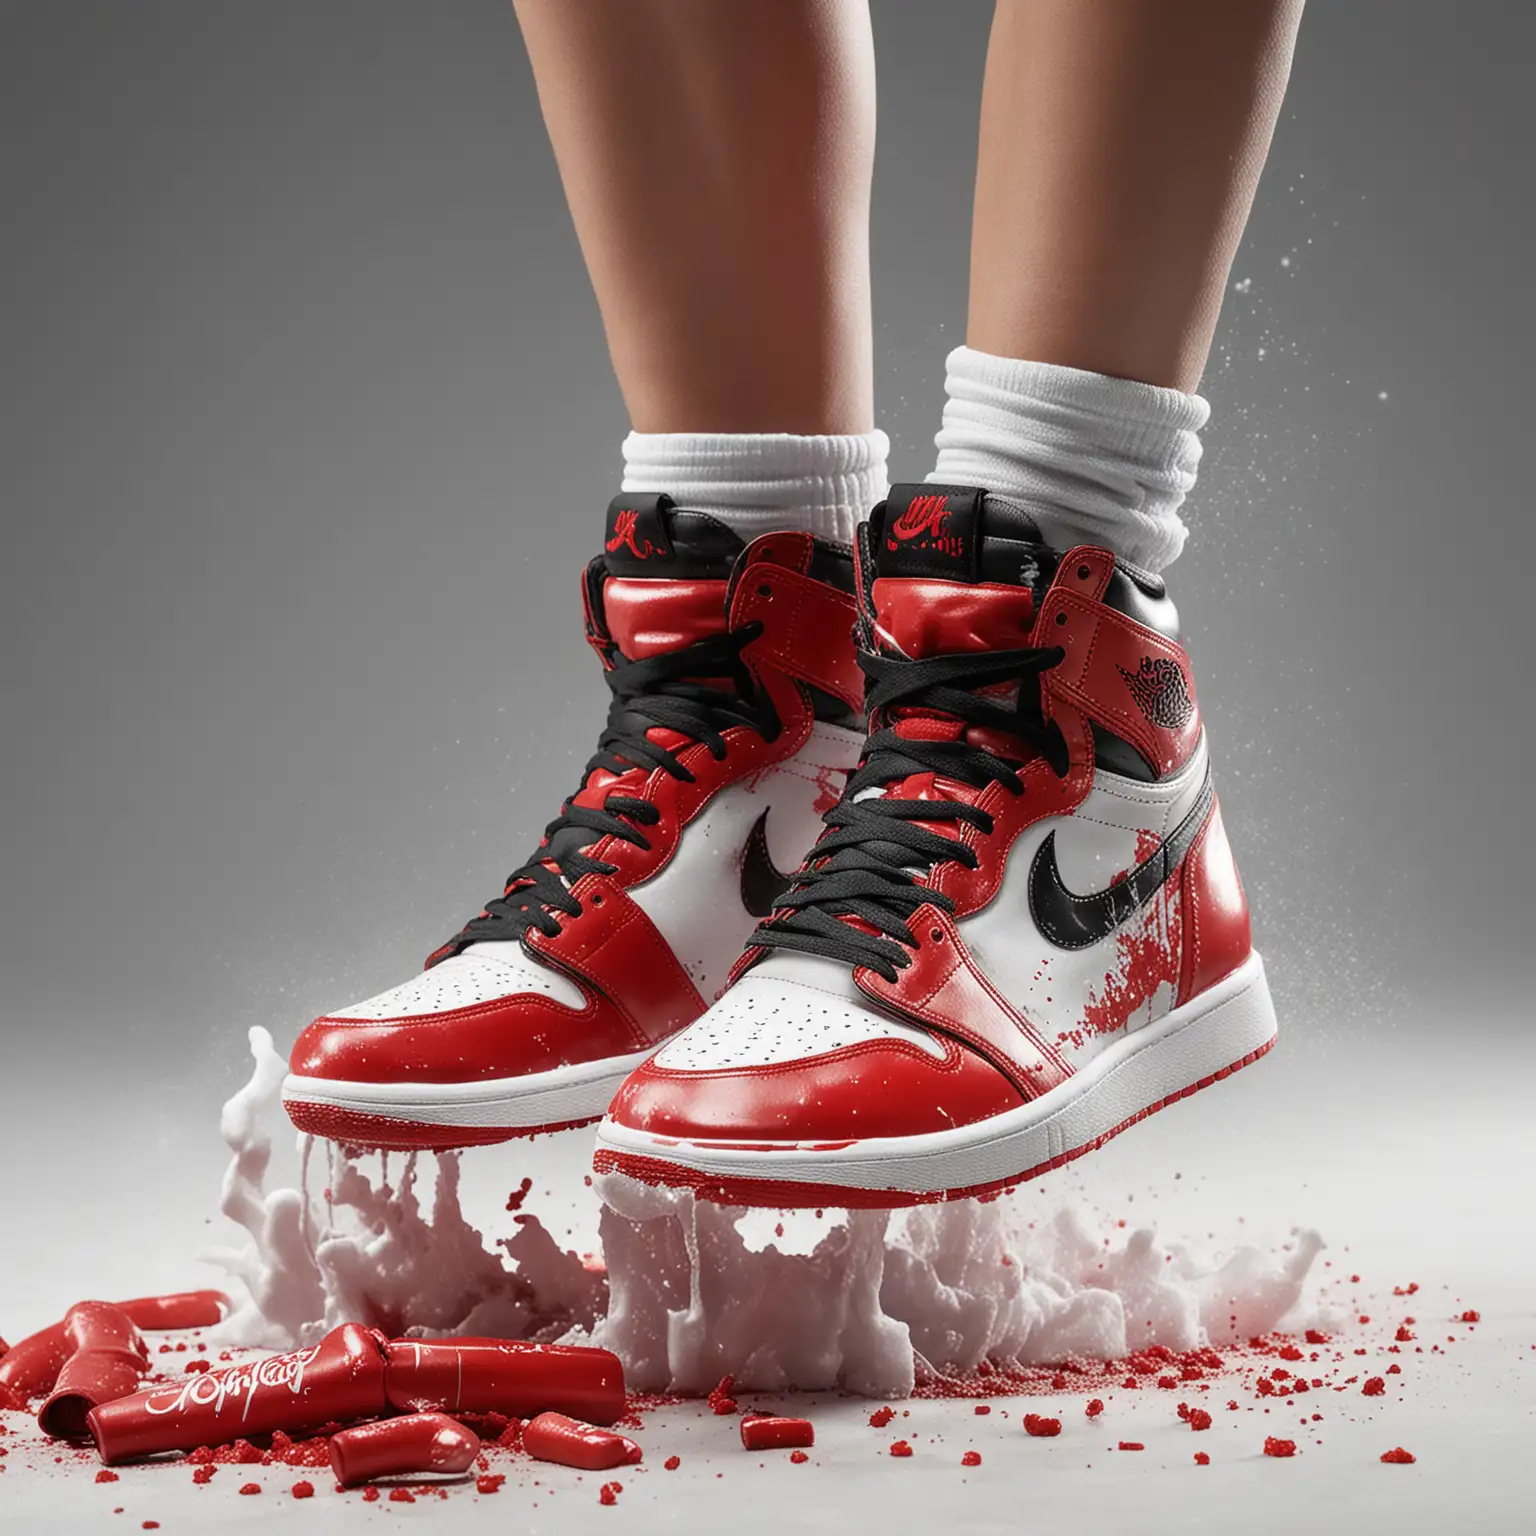 Asian boxing girl's feet in Air Jordan 1 OG High, stomping on coke, close look